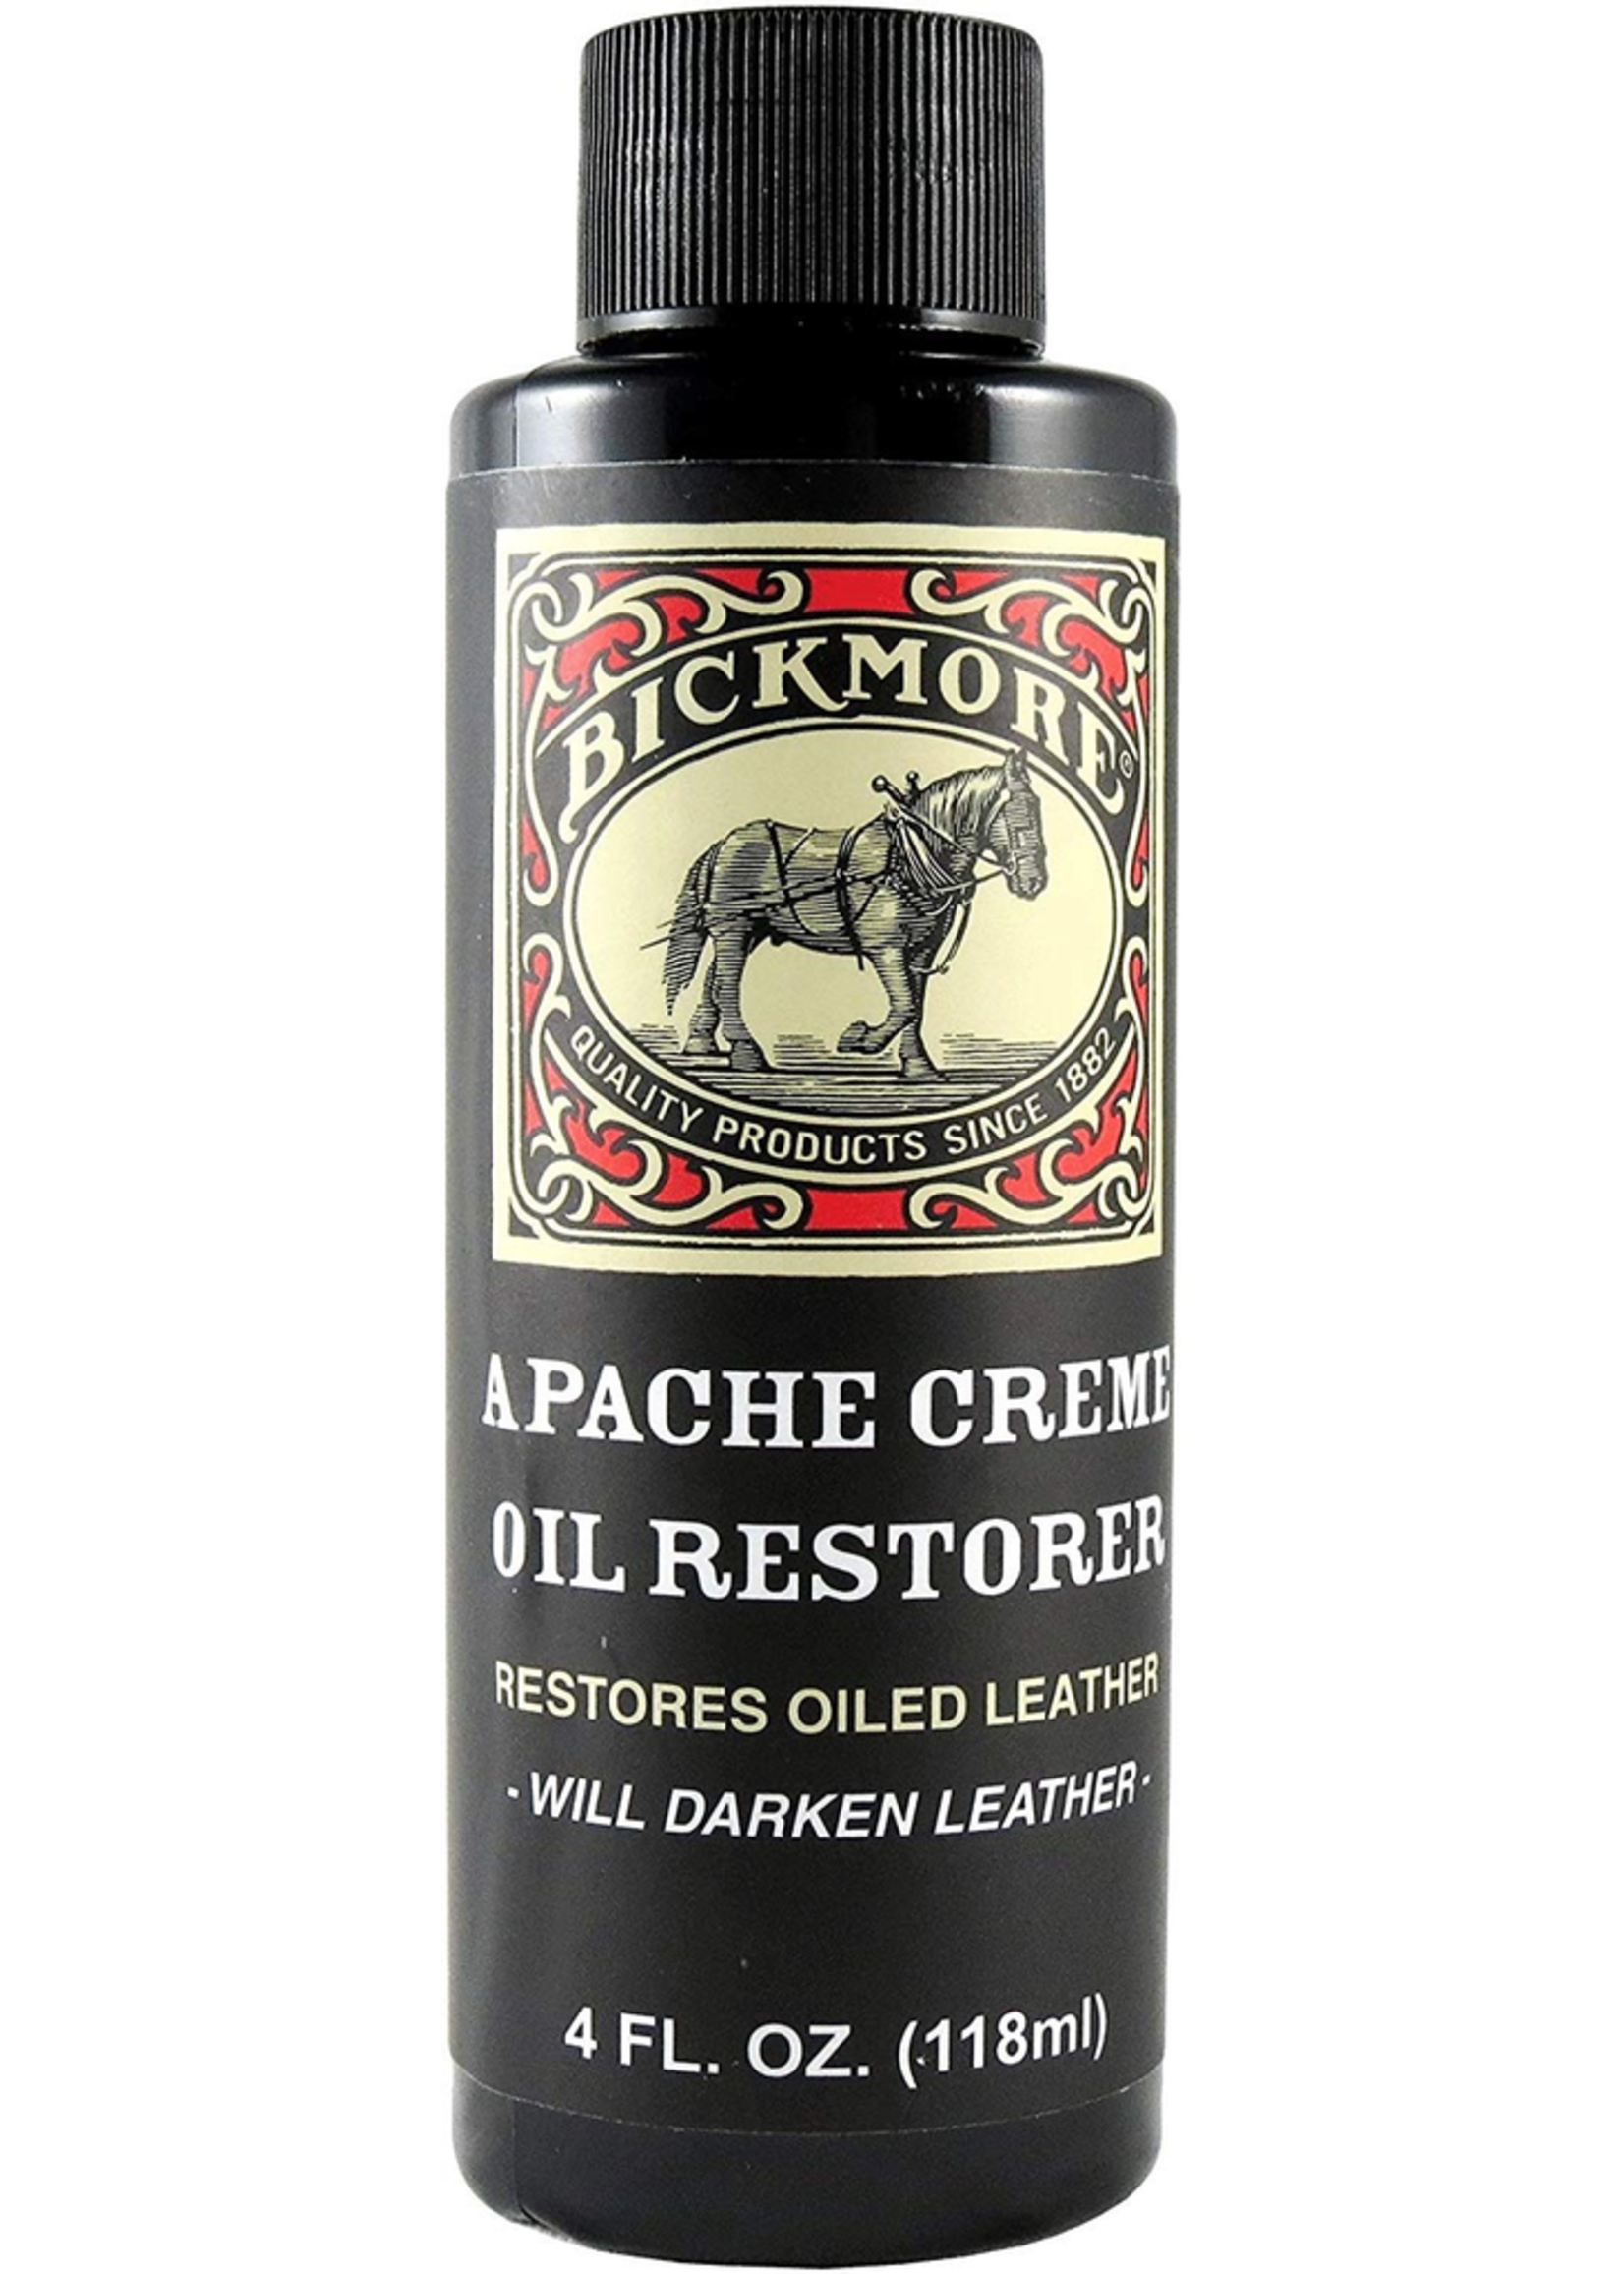 BICKMORE Apache Cream  Oil Restorer 4 oz